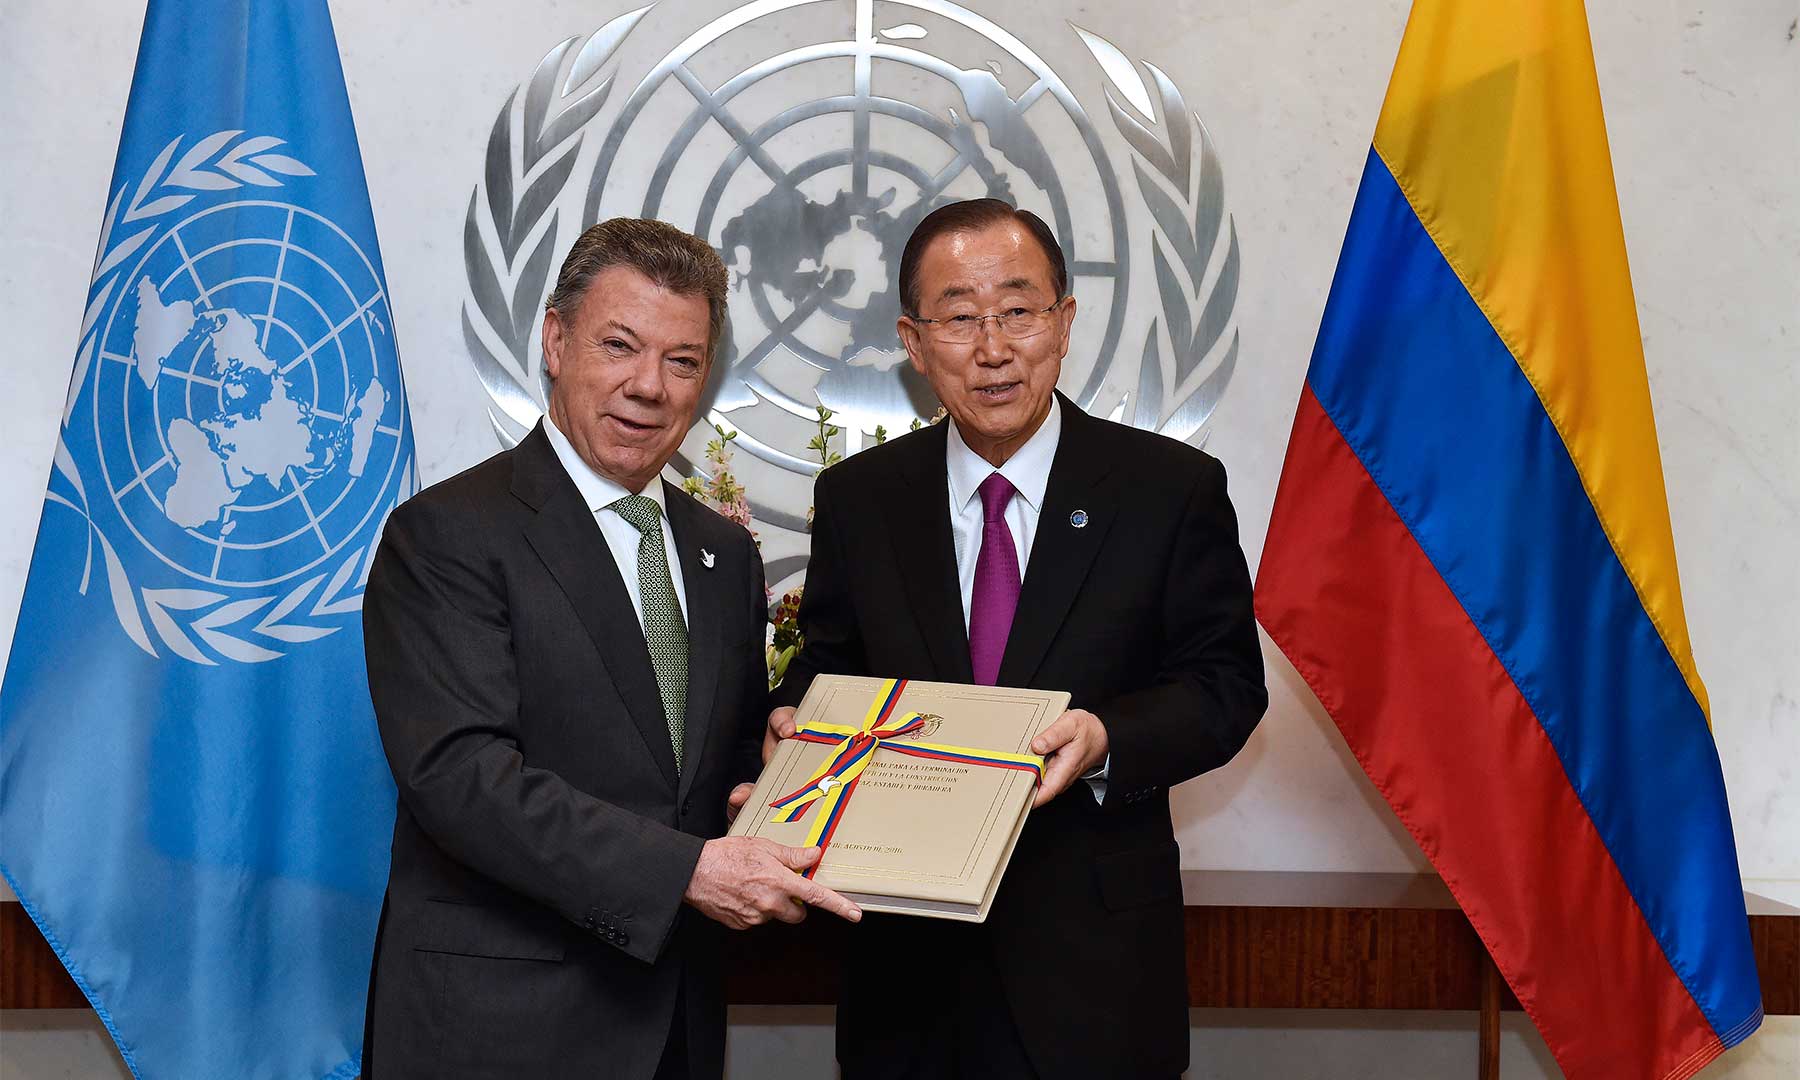 El Presidente Juan Manuel Santos le entregó este lunes una copia del Acuerdo de Paz logrado en Colombia al Secretario de las Naciones Unidas, Ban Ki-moon. “Colombia cuenta con todo nuestro apoyo”, expresó el Secretario de la ONU.